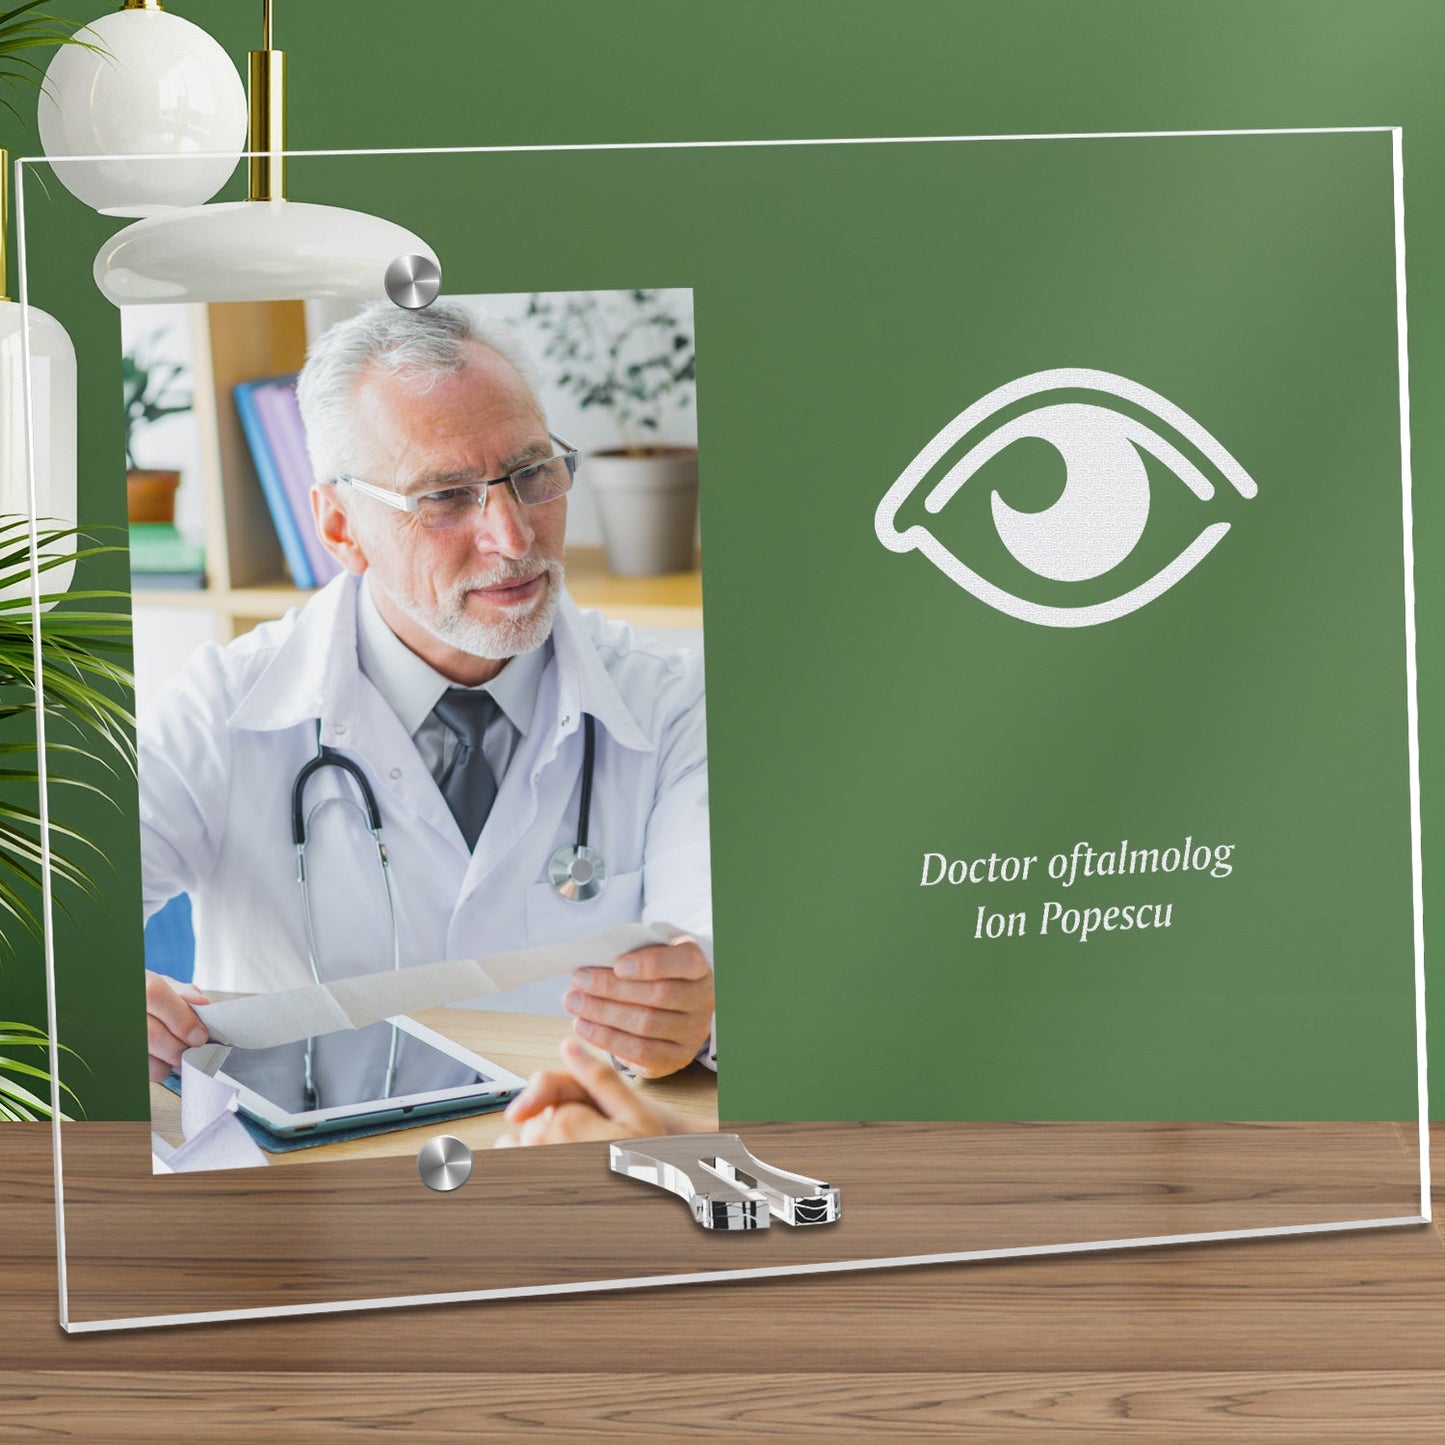 Cadou personalizat rama plexiglas - Doctor oftalmolog